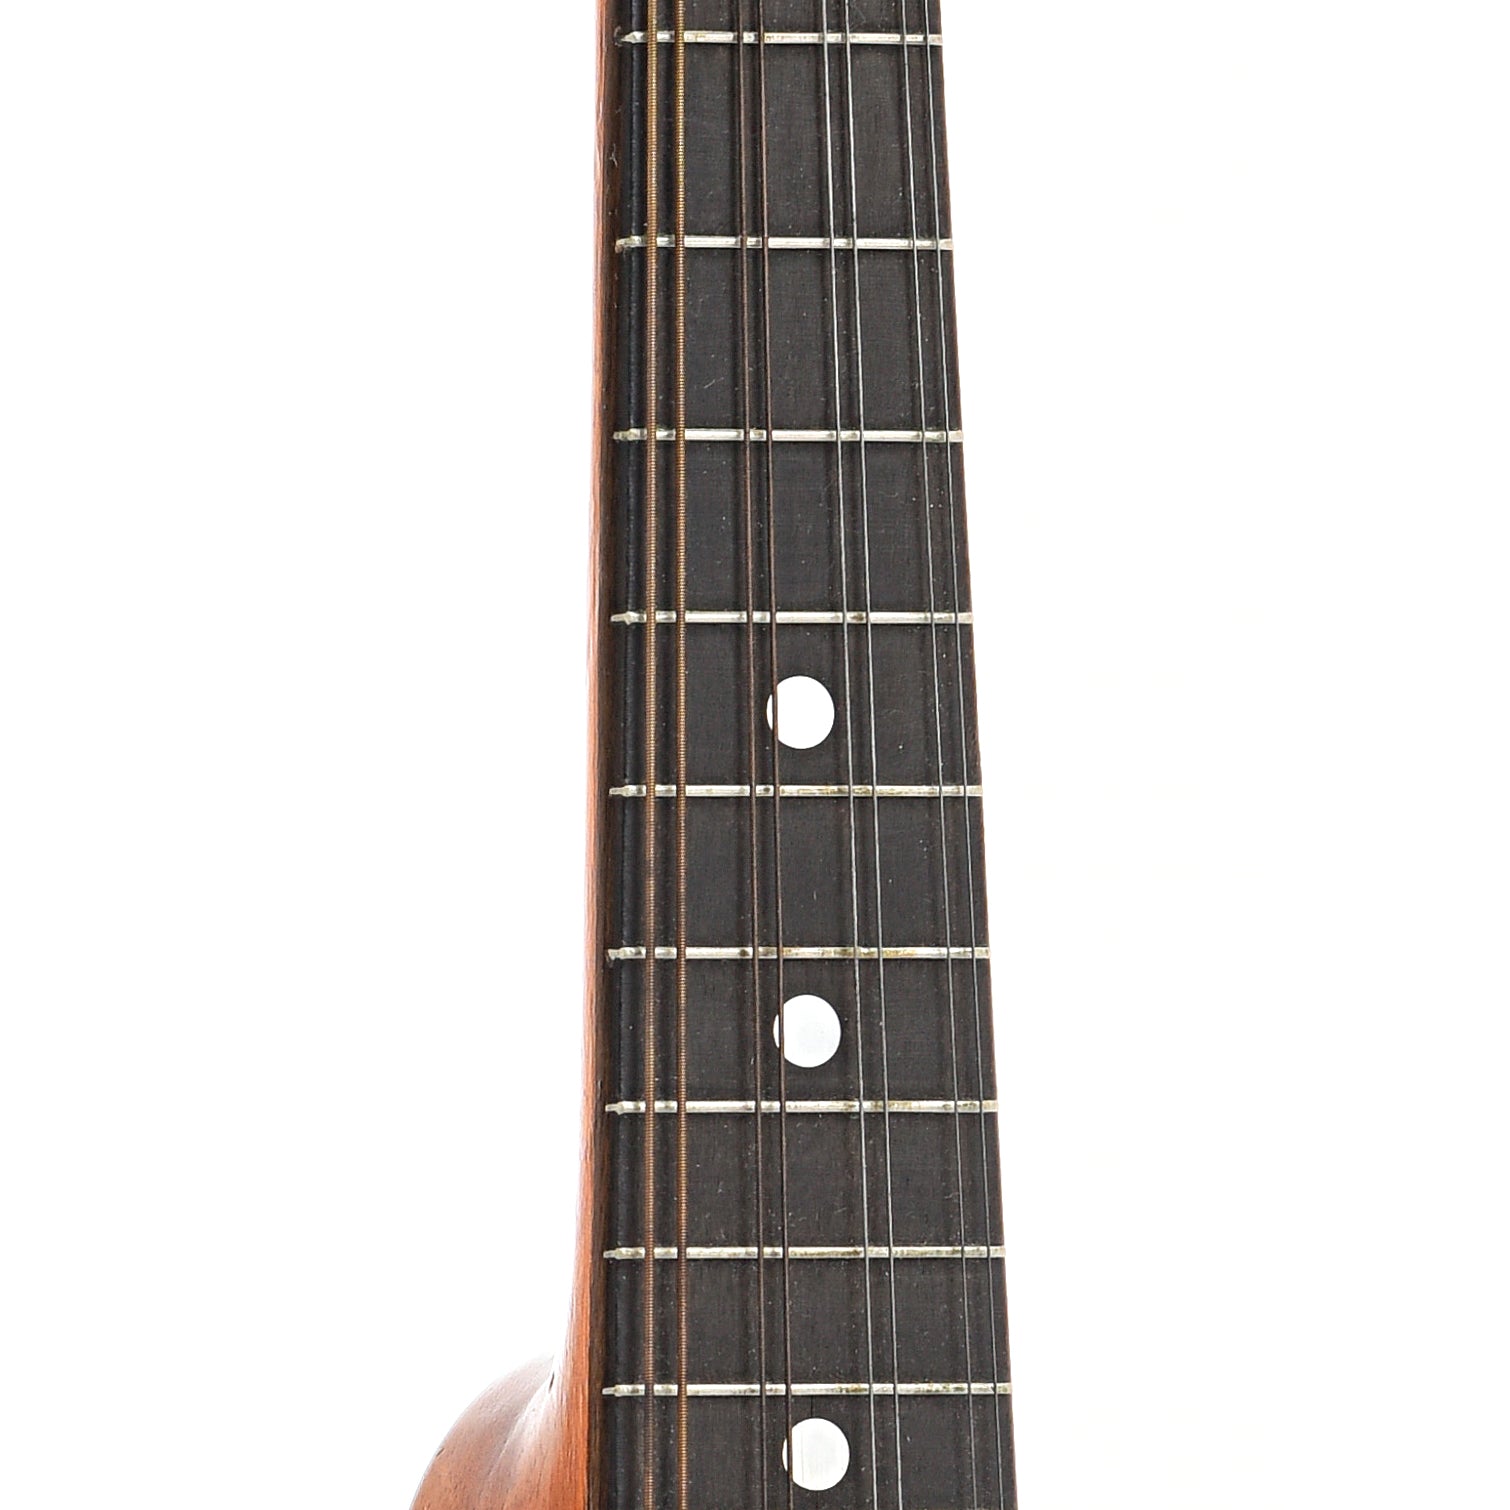 Fretboard of Washburn G2606 A-style Mandolin (c.1926)